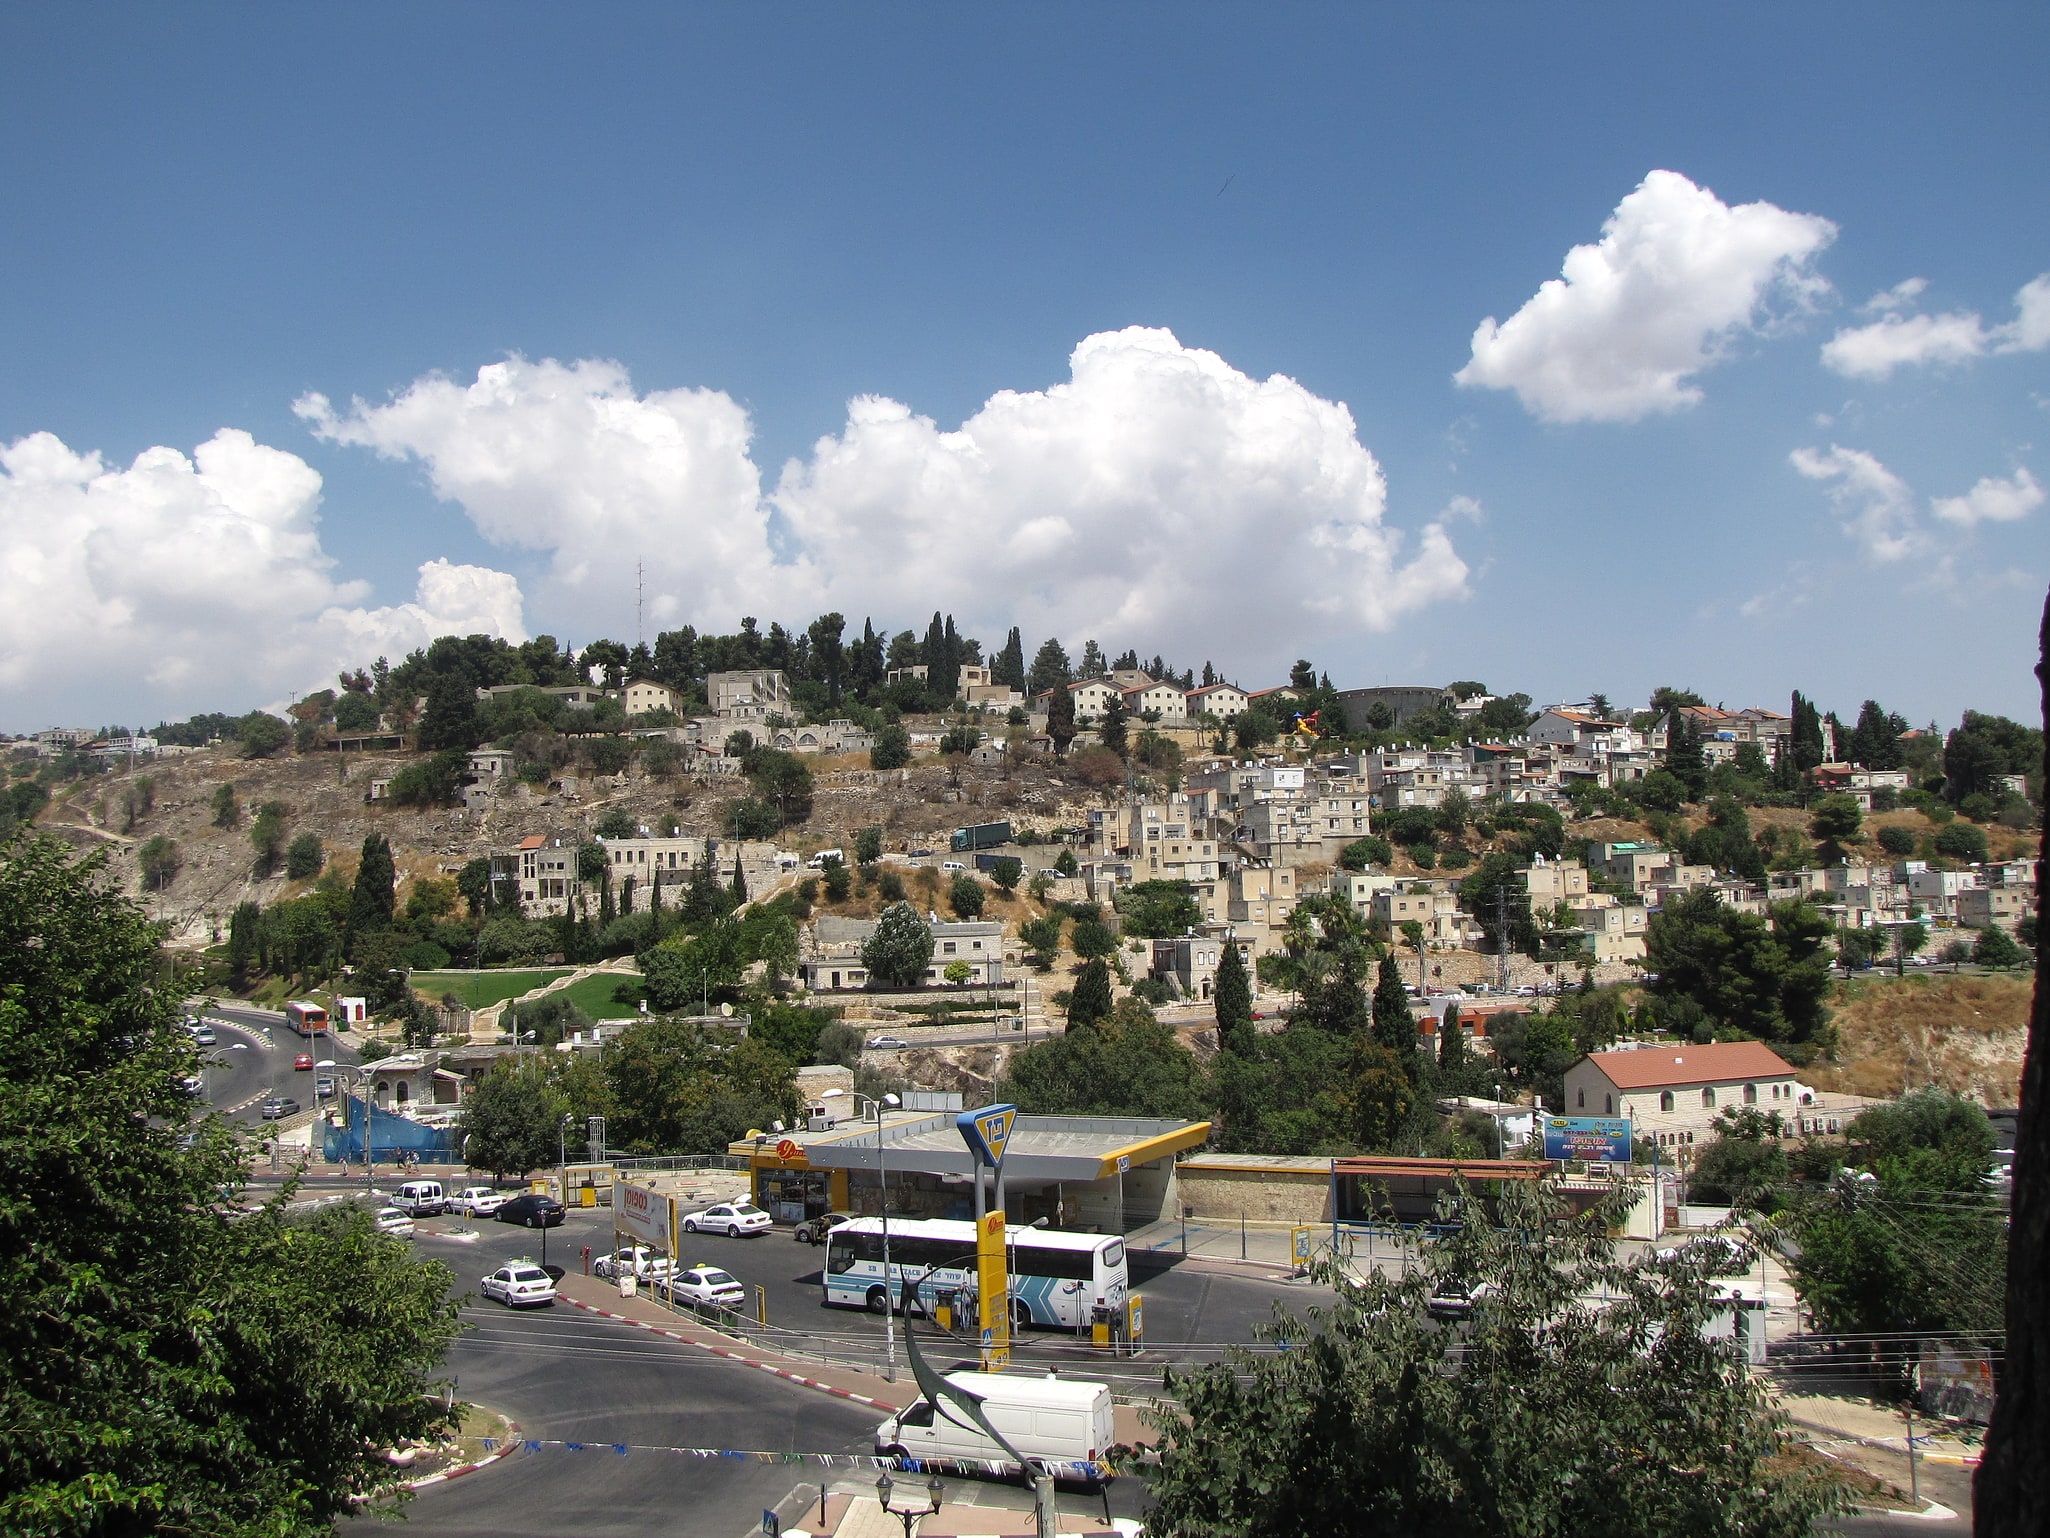 Safed, Israel